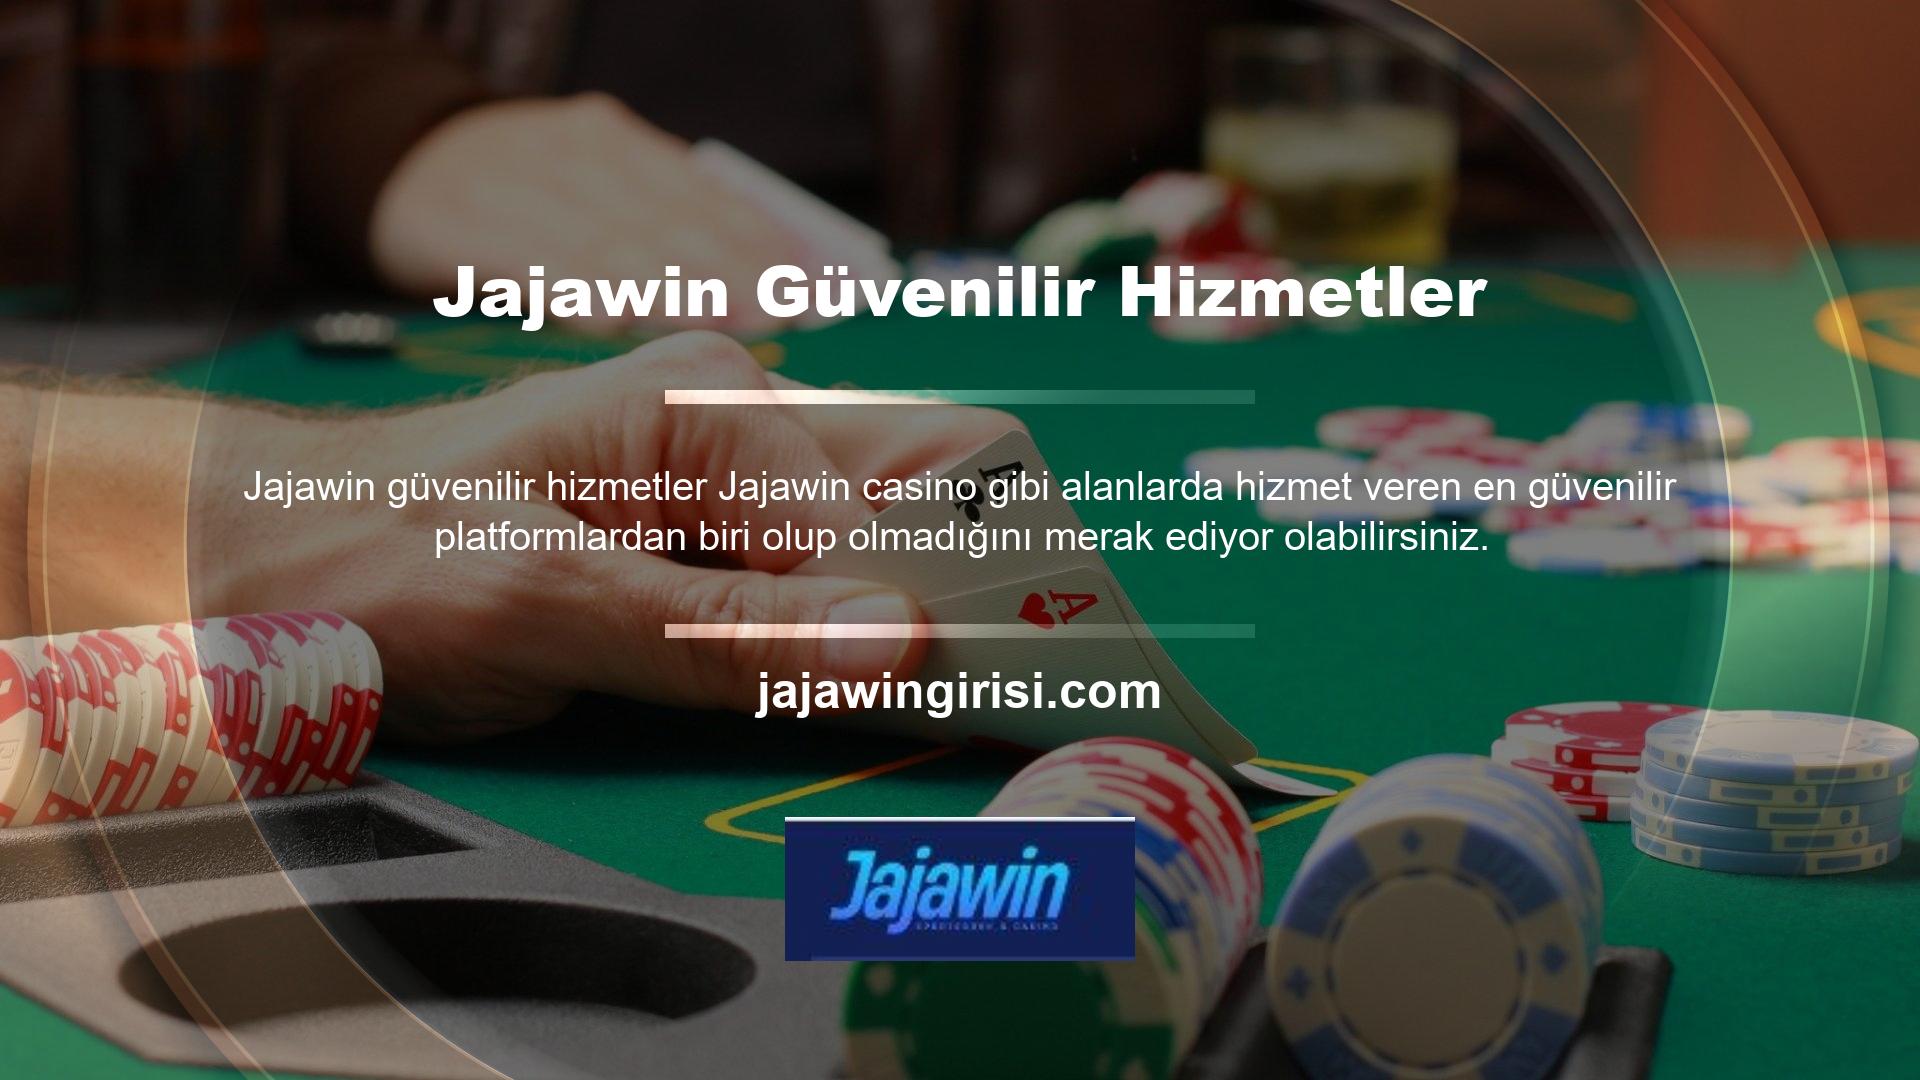 Jajawin, casino pazarının en büyük oyuncularından biri olarak kabul ediliyor ve web siteleri çoğunlukla Jajawin adı altında güncelleniyor